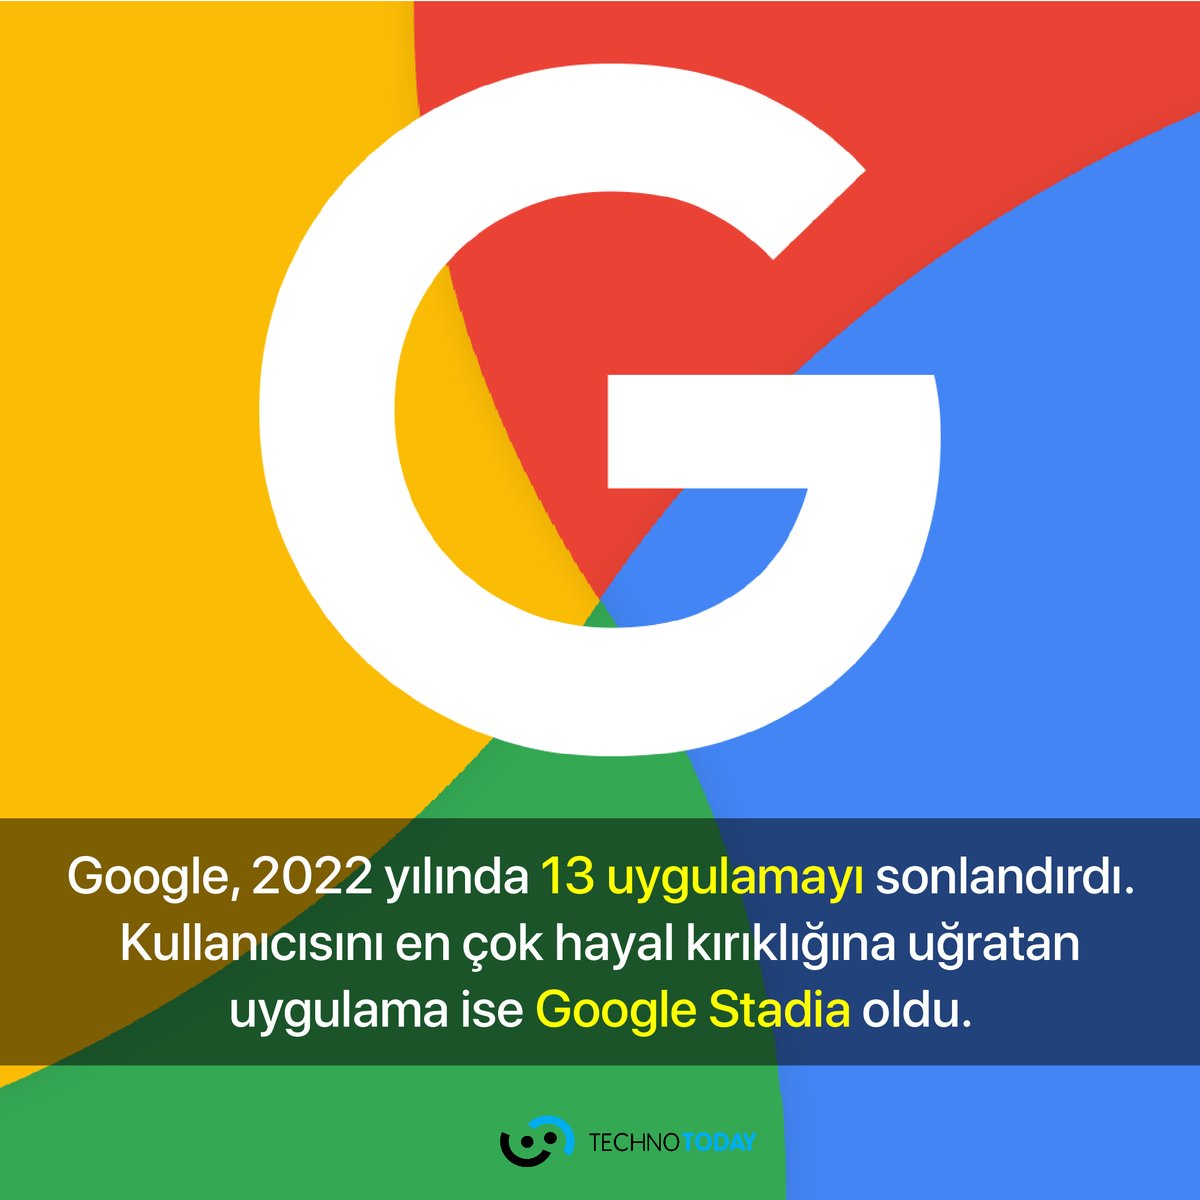 Google 2022 yılında 13 uygulamasını sonlandırdı. Haberin detayları için⬇️
technotoday.com.tr/google-bu-uygu…

#google #teknolojihaberleri #googlestadia #teknoloji #technotoday